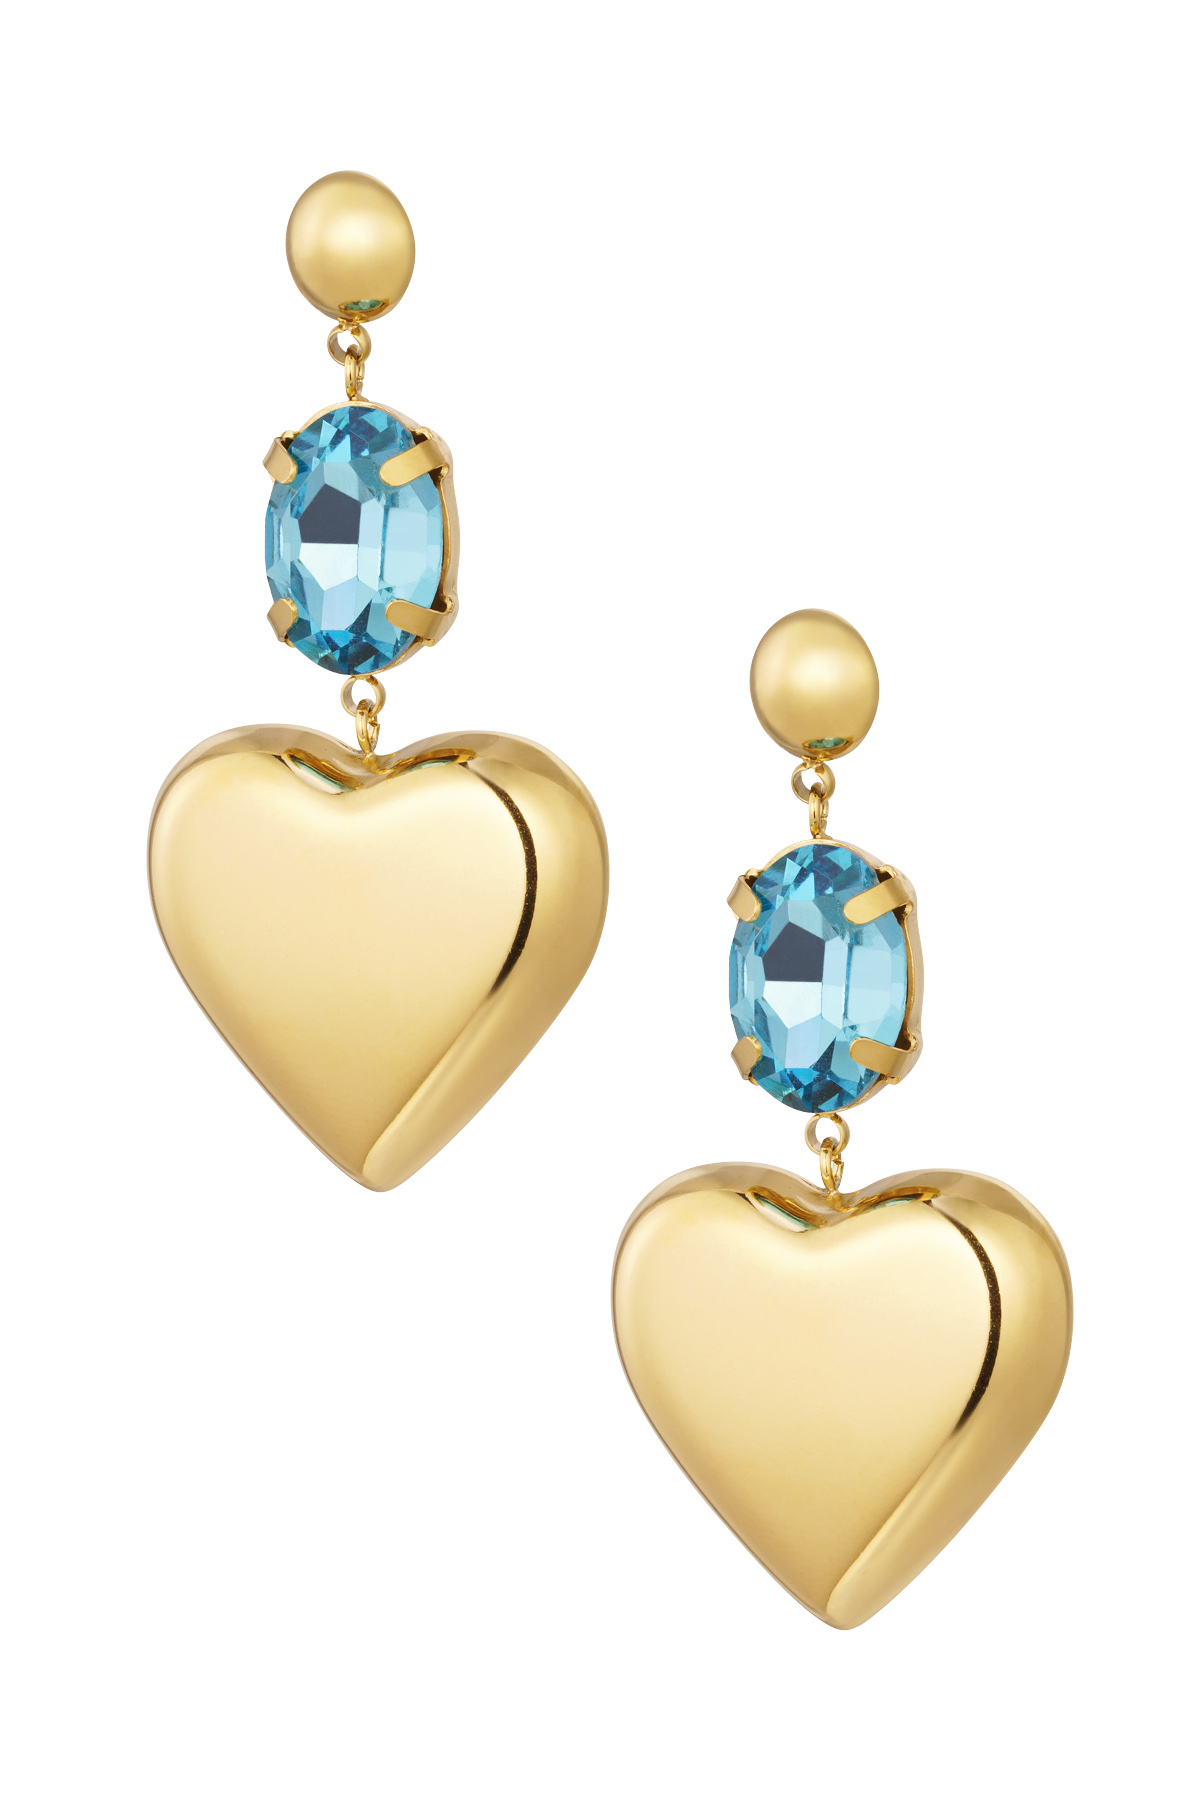 Orecchini cuore con pietra - Acciaio inossidabile oro/blu 